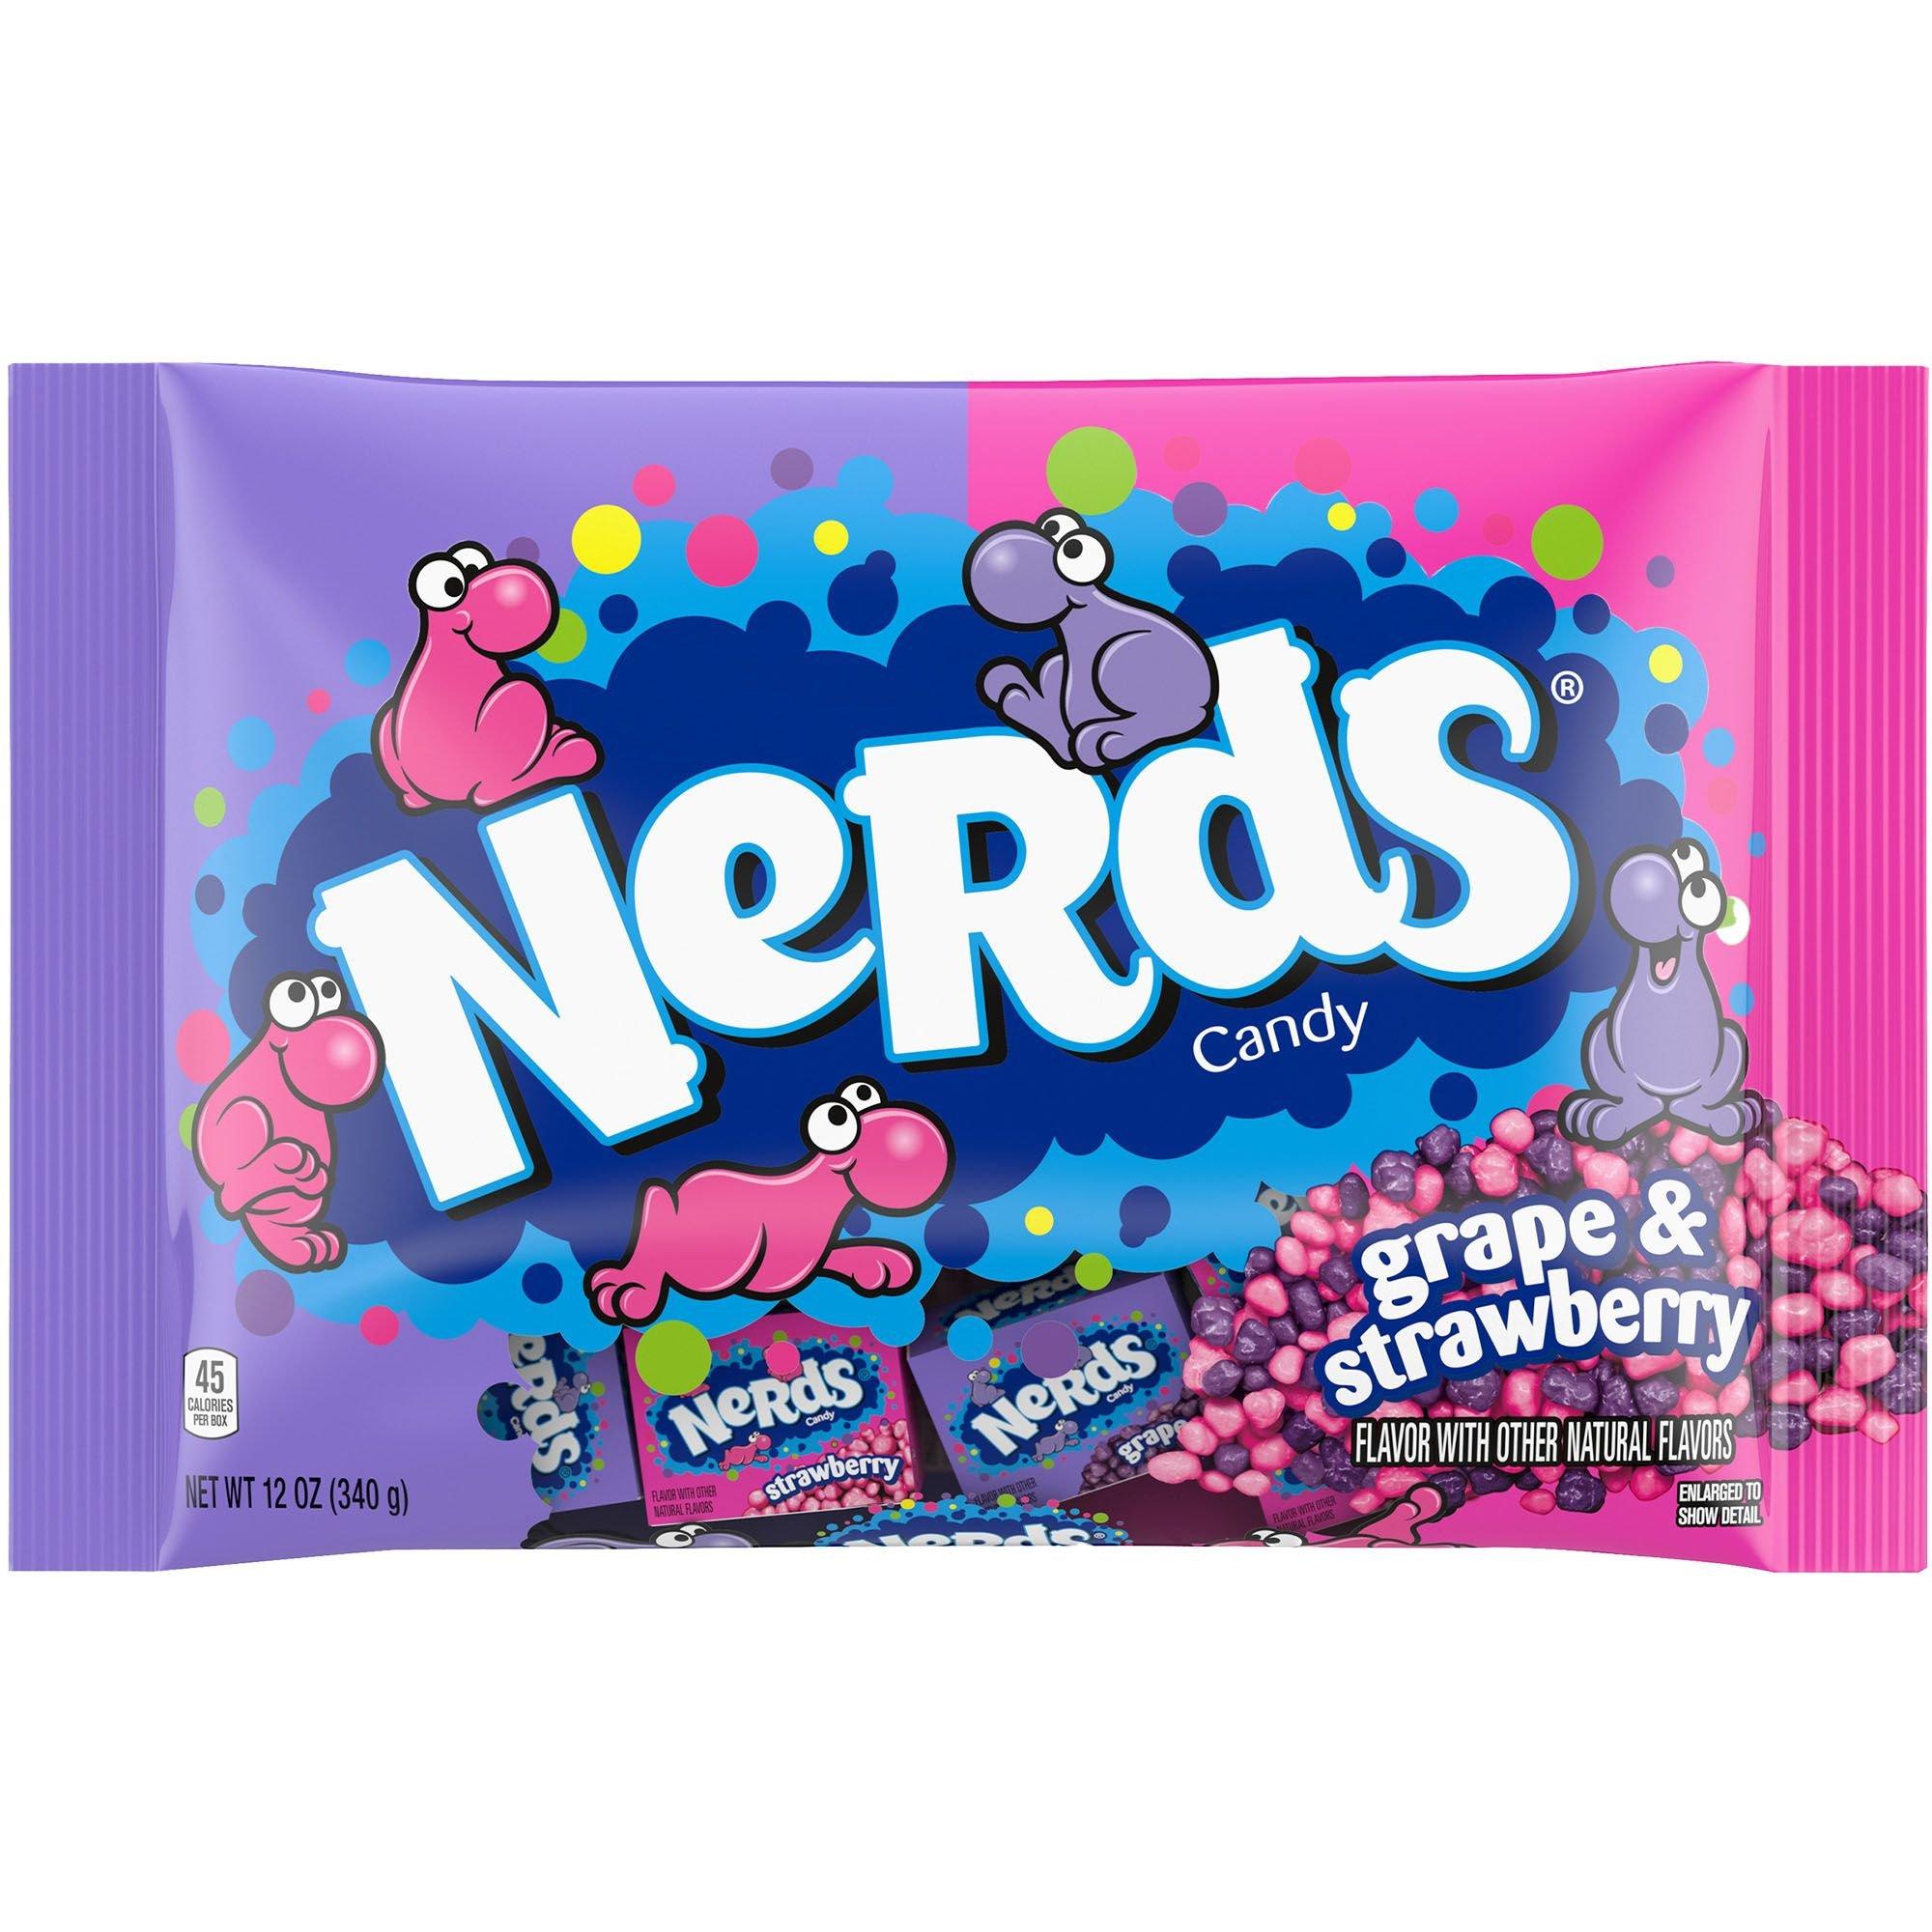 wonka nerds candy character